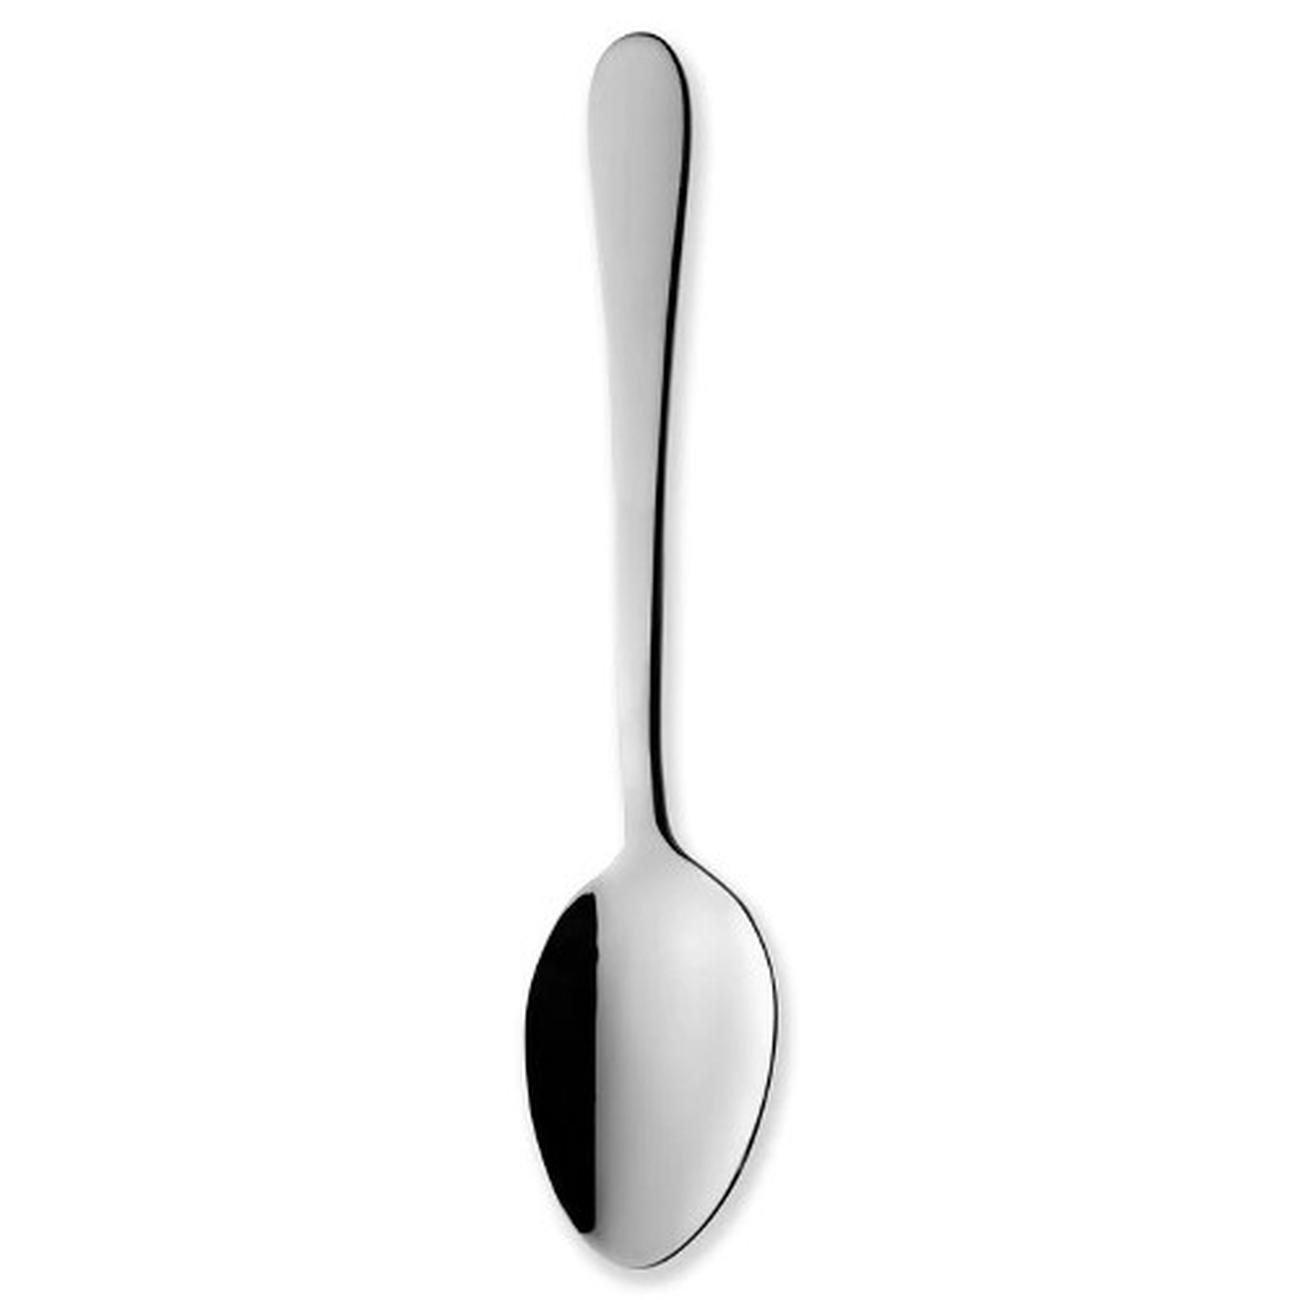 grunwerg-windsor-set-of-2-serving-spoons - Grunwerg Windsor Serving Spoons Set of 2